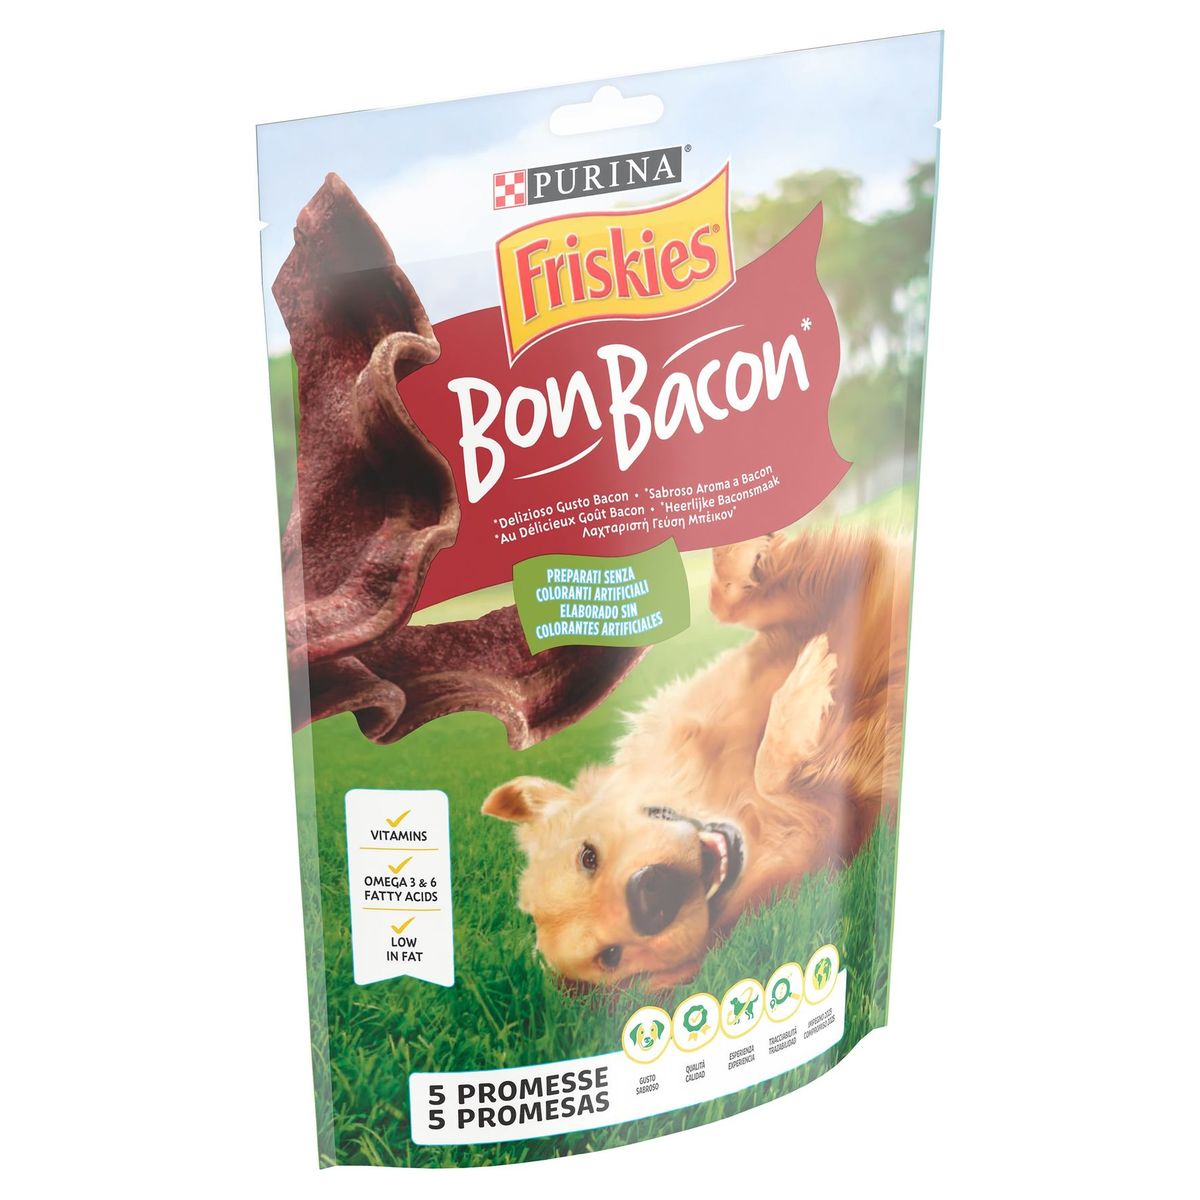 Friskies Bon Bacon 120 g